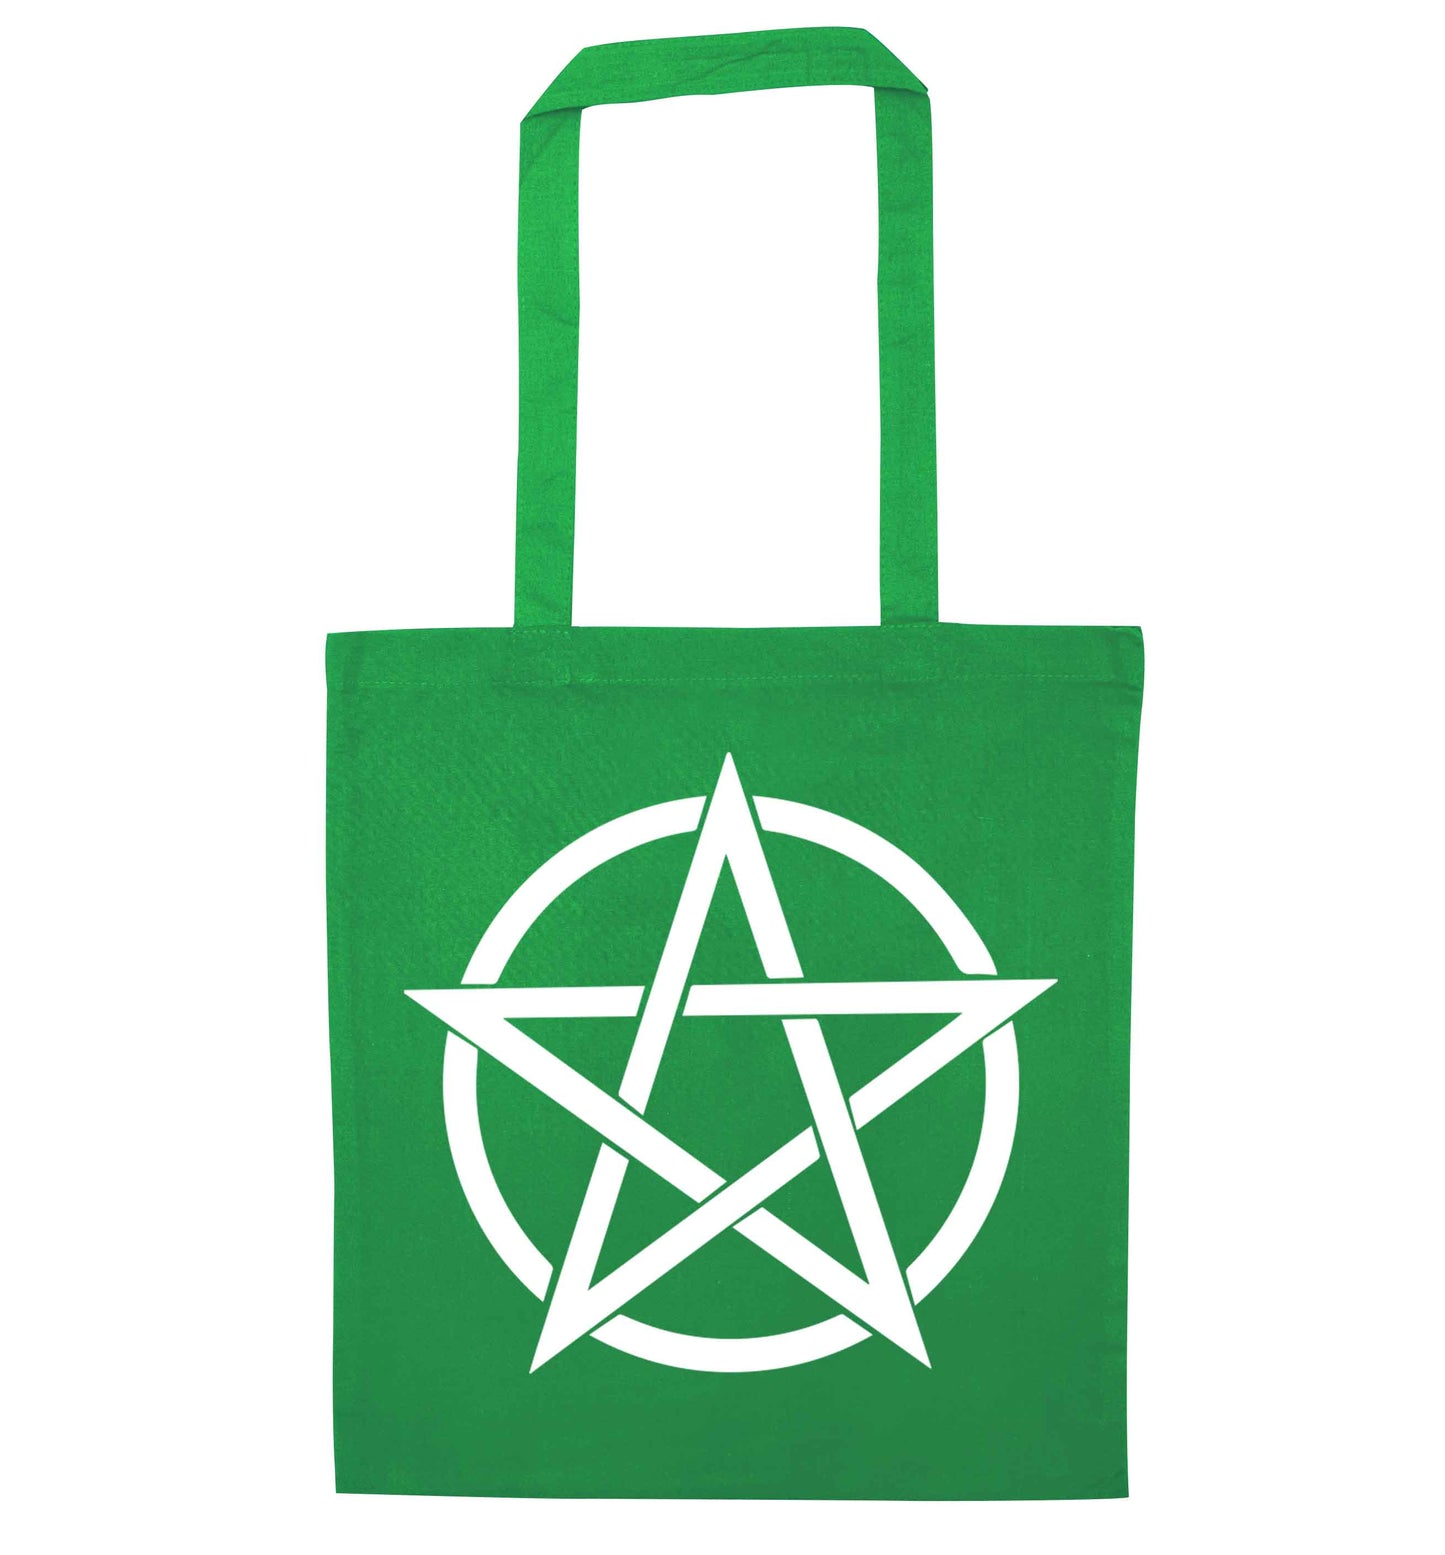 Pentagram symbol green tote bag